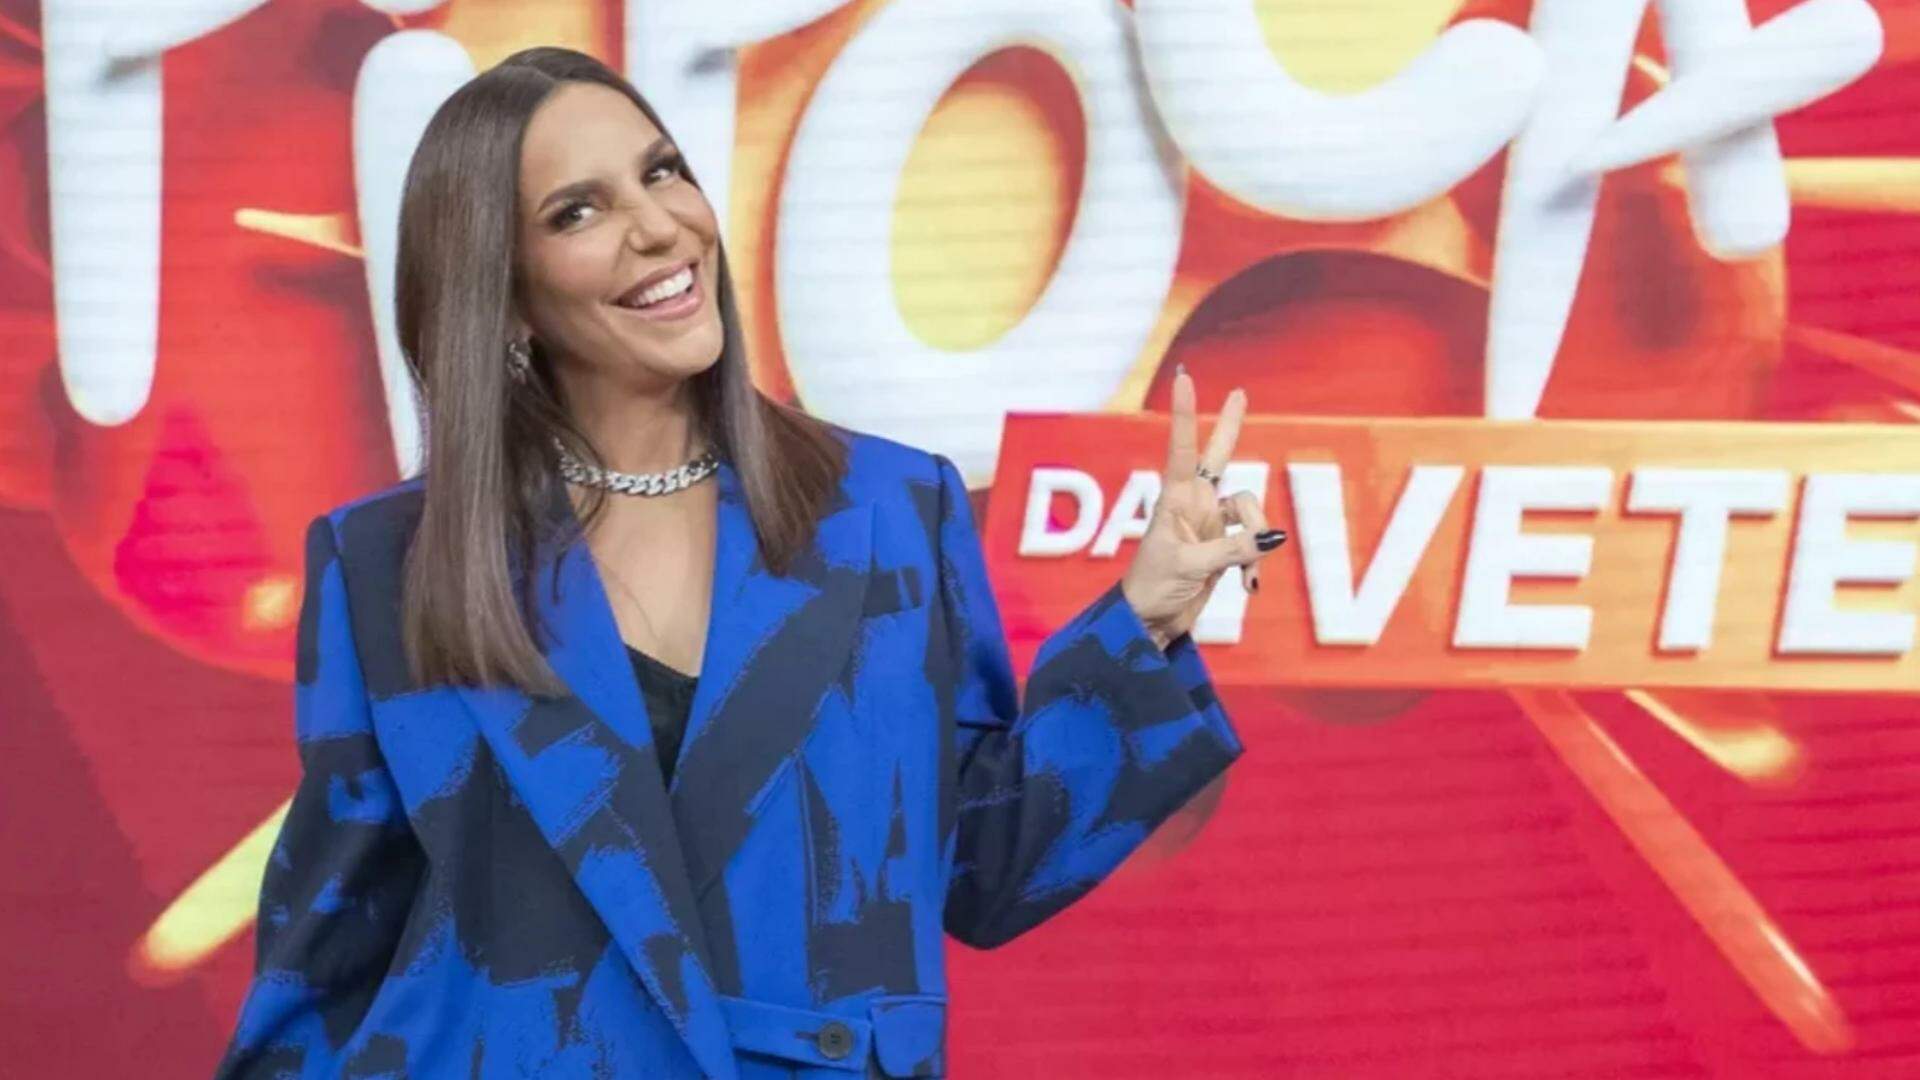 Ivete Sangalo, lança tendências de moda com looks fashions no programa “Pipoca da Ivete” - Metropolitana FM